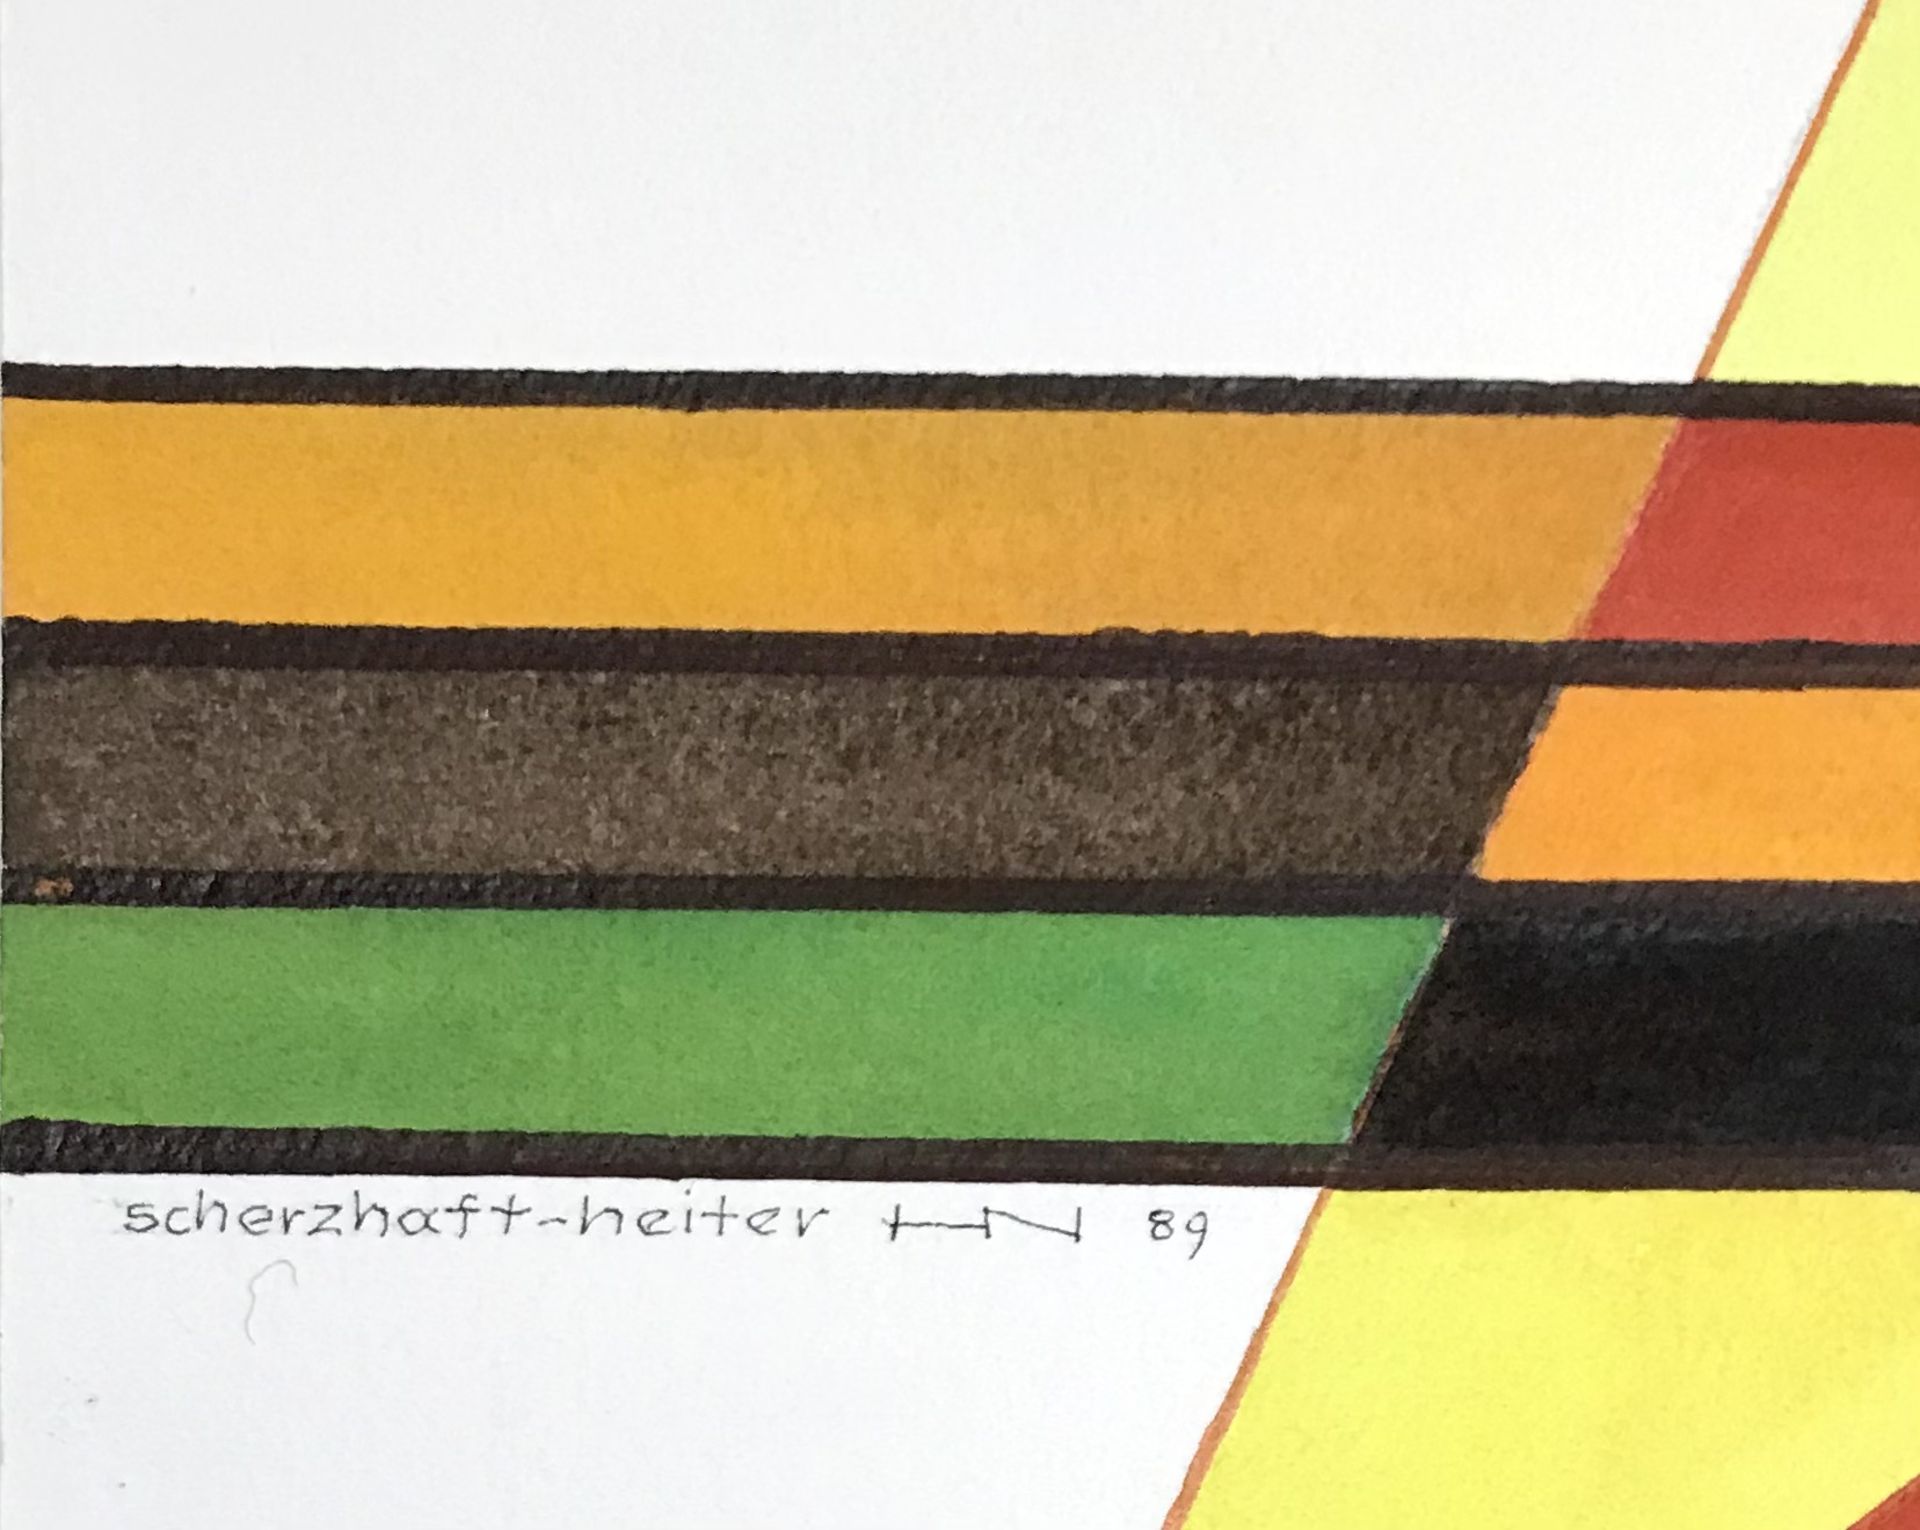 Neuy, Heinrich: "Scherzhaft Heiter",dat.1989 - Image 2 of 2